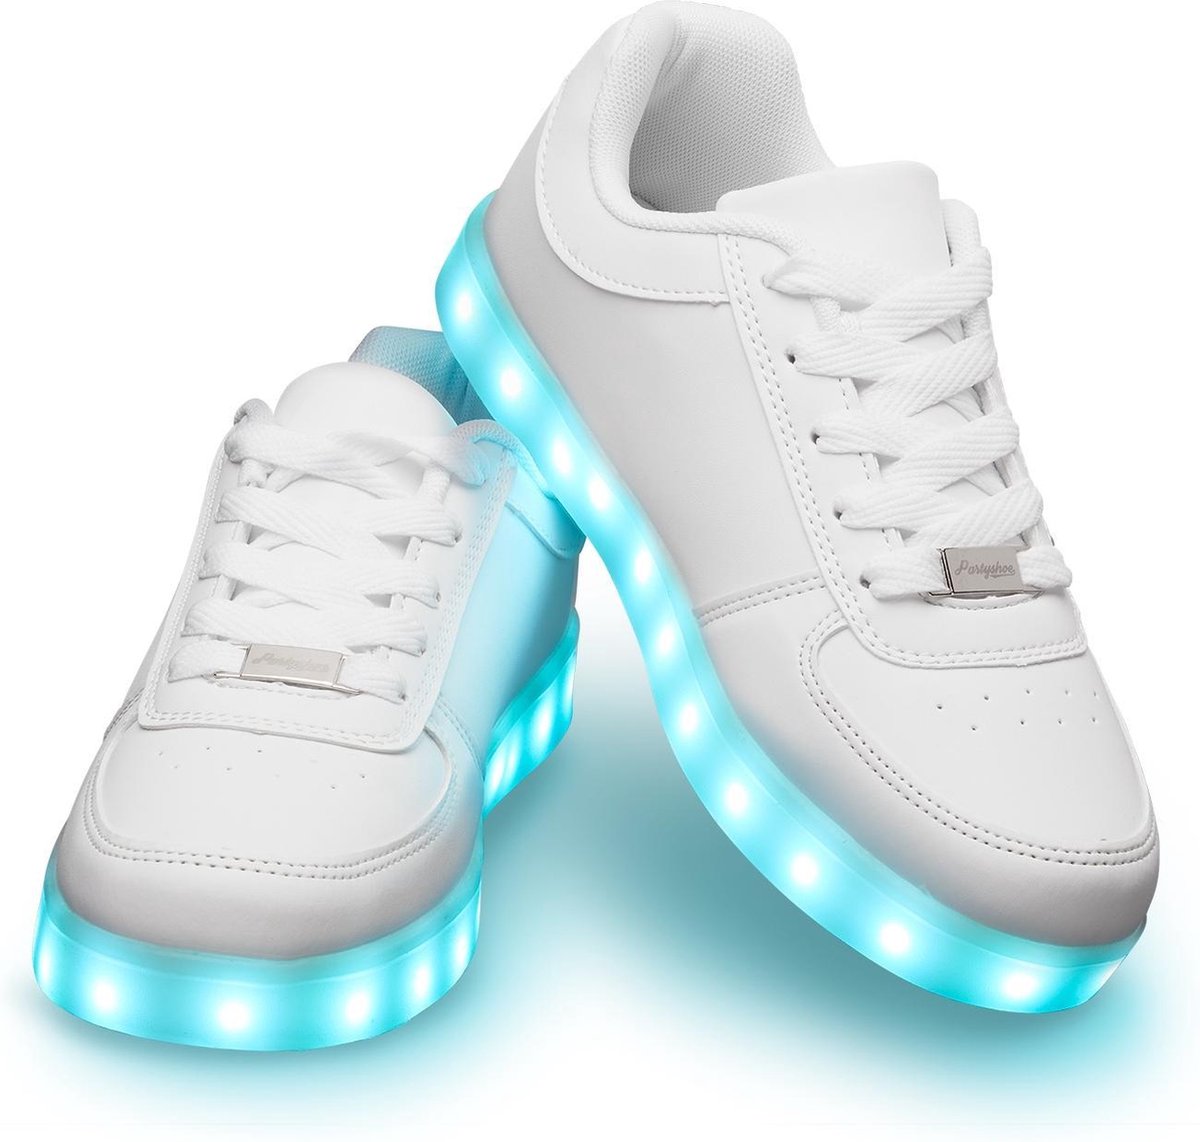 Schoenen met lichtjes - Lichtgevende led schoenen - Wit - Maat 44 | bol.com